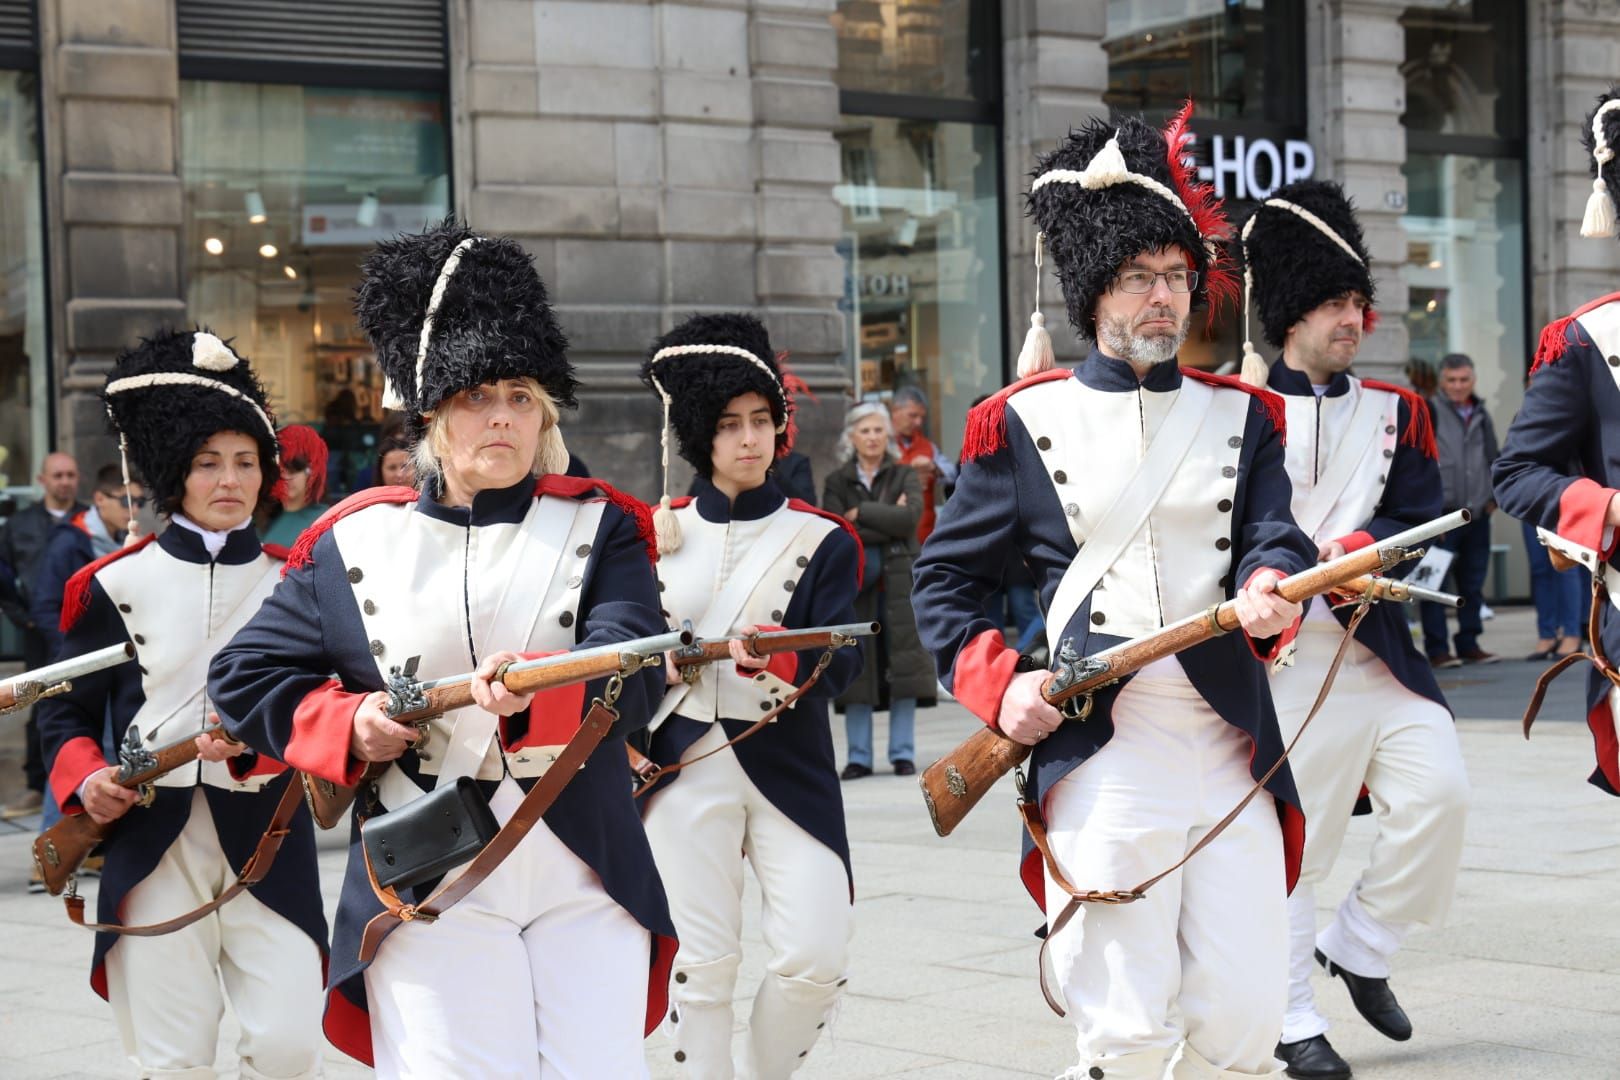 Día dos de la invasión francesa: las tropas de Napoleón no frustran la fiesta a los vigueses